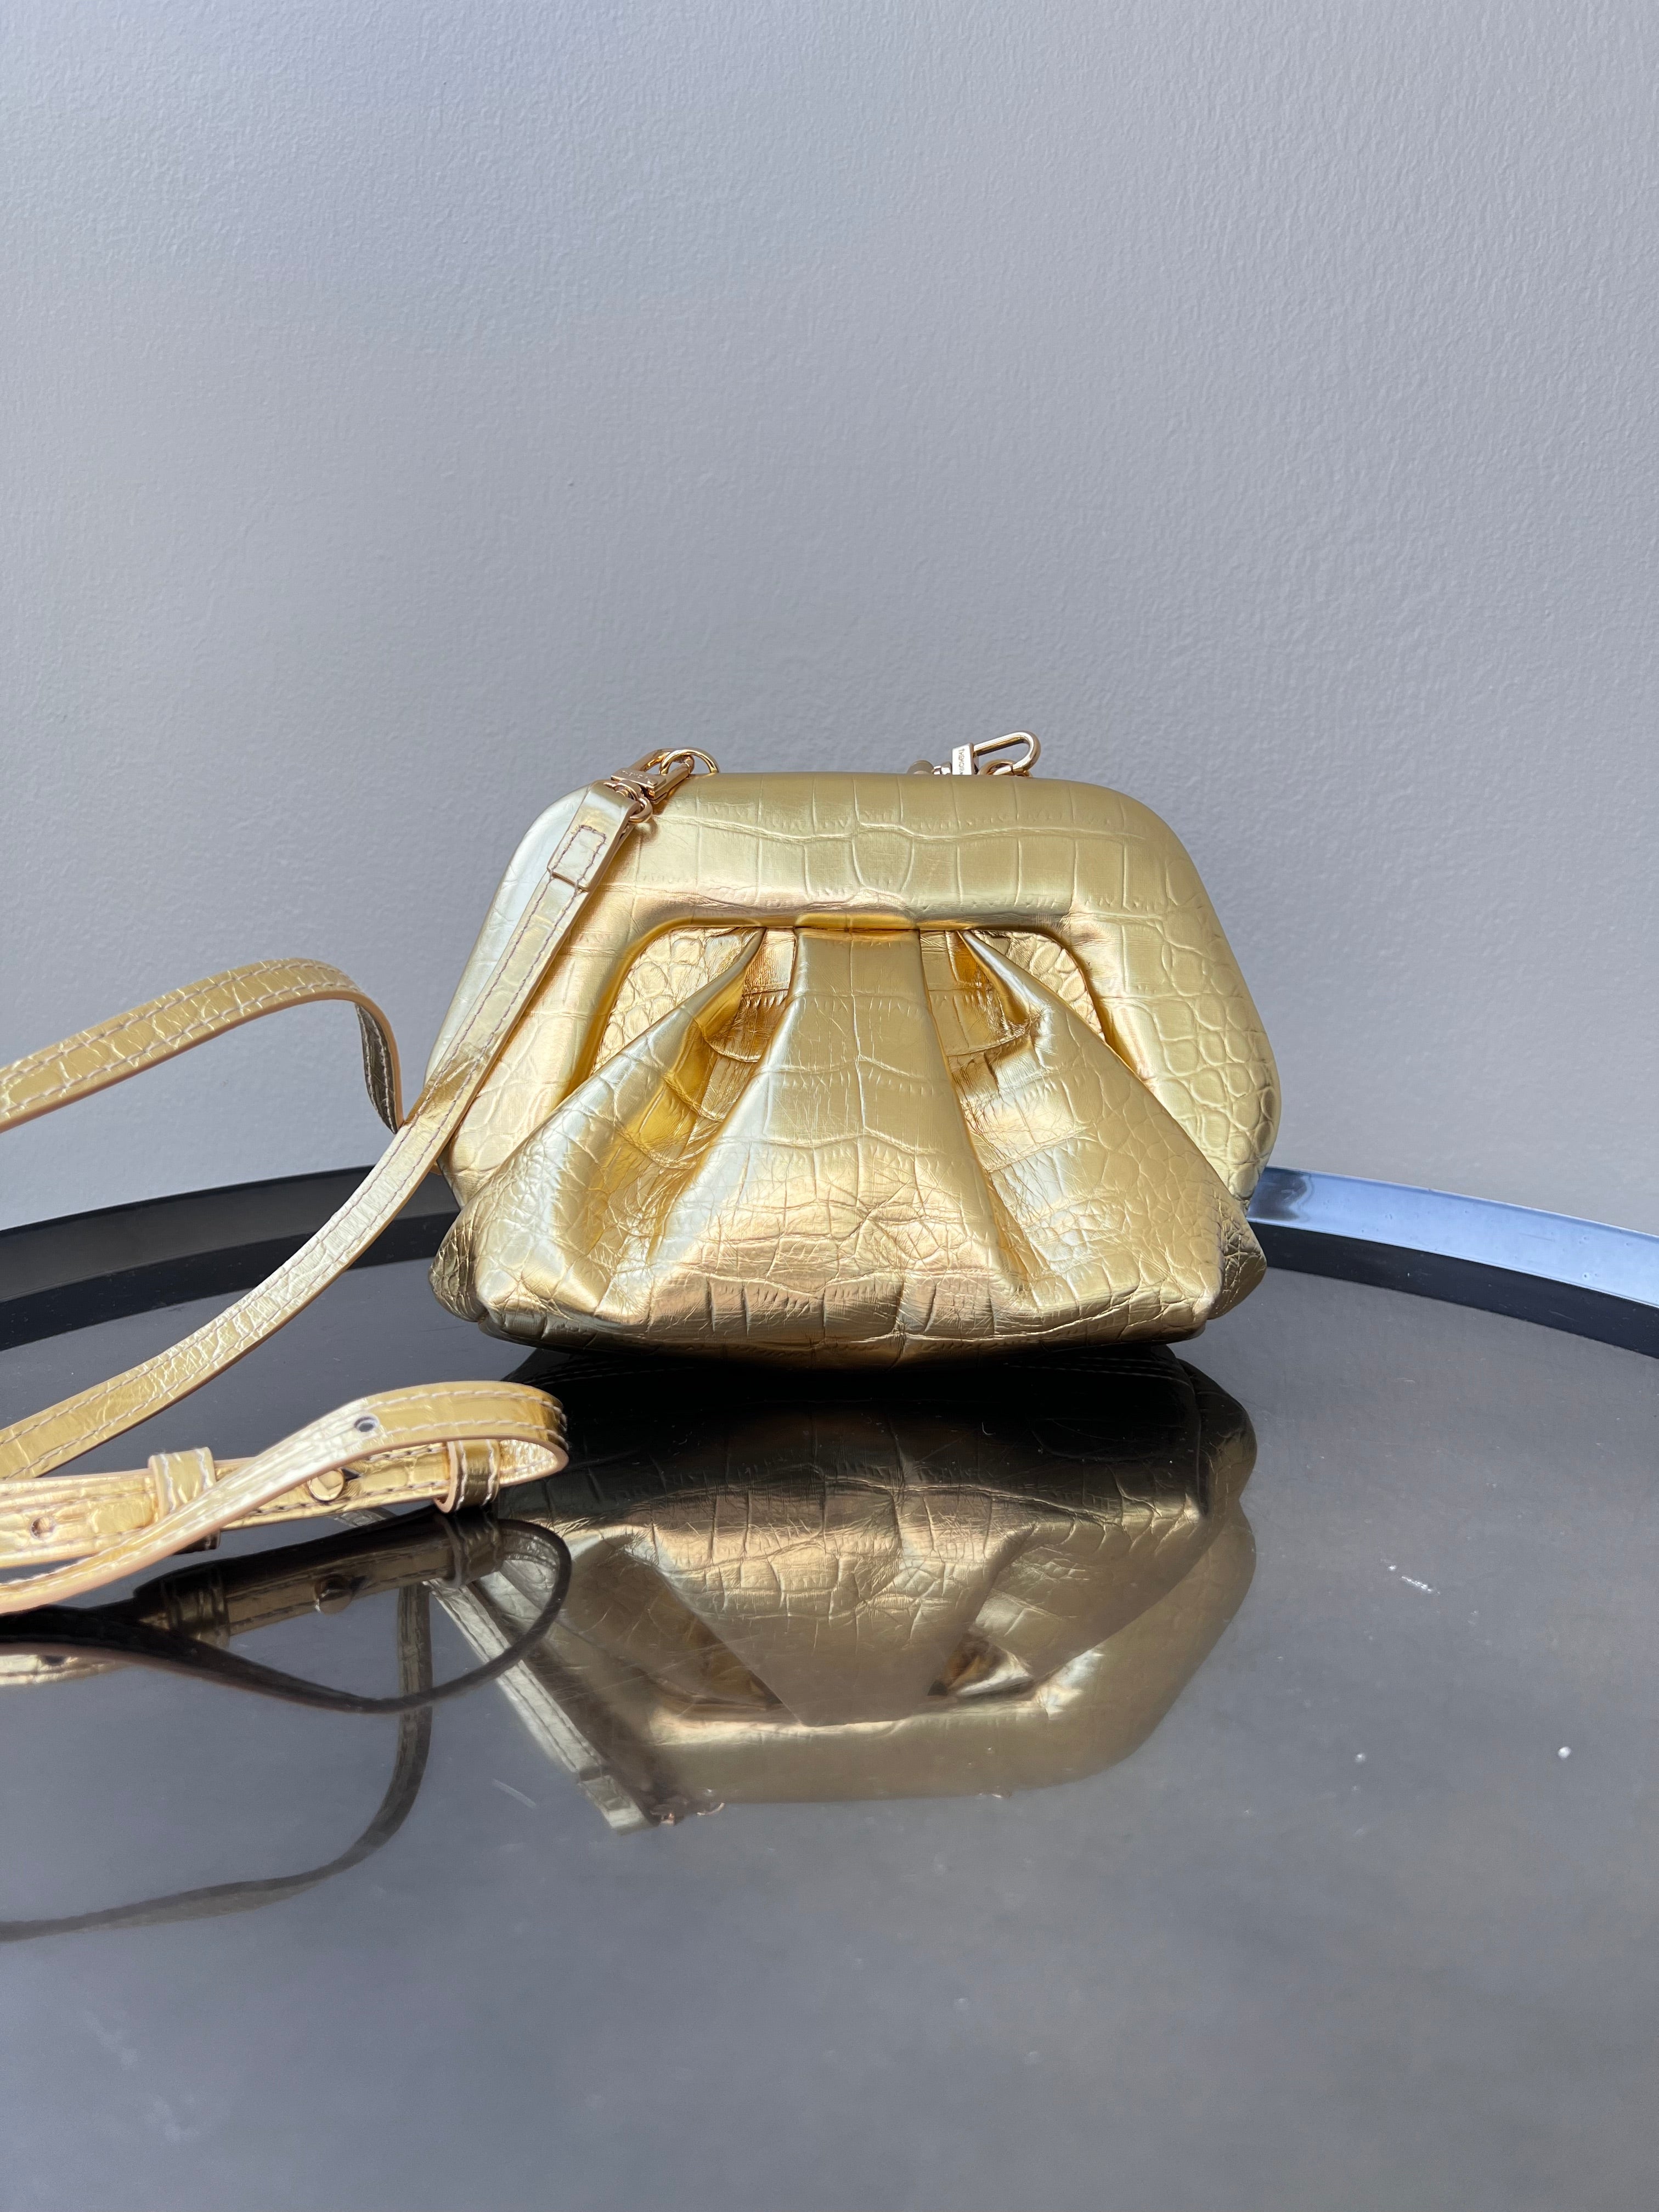 Gold themoiré tussy leather handbag - THEMOIRÈ